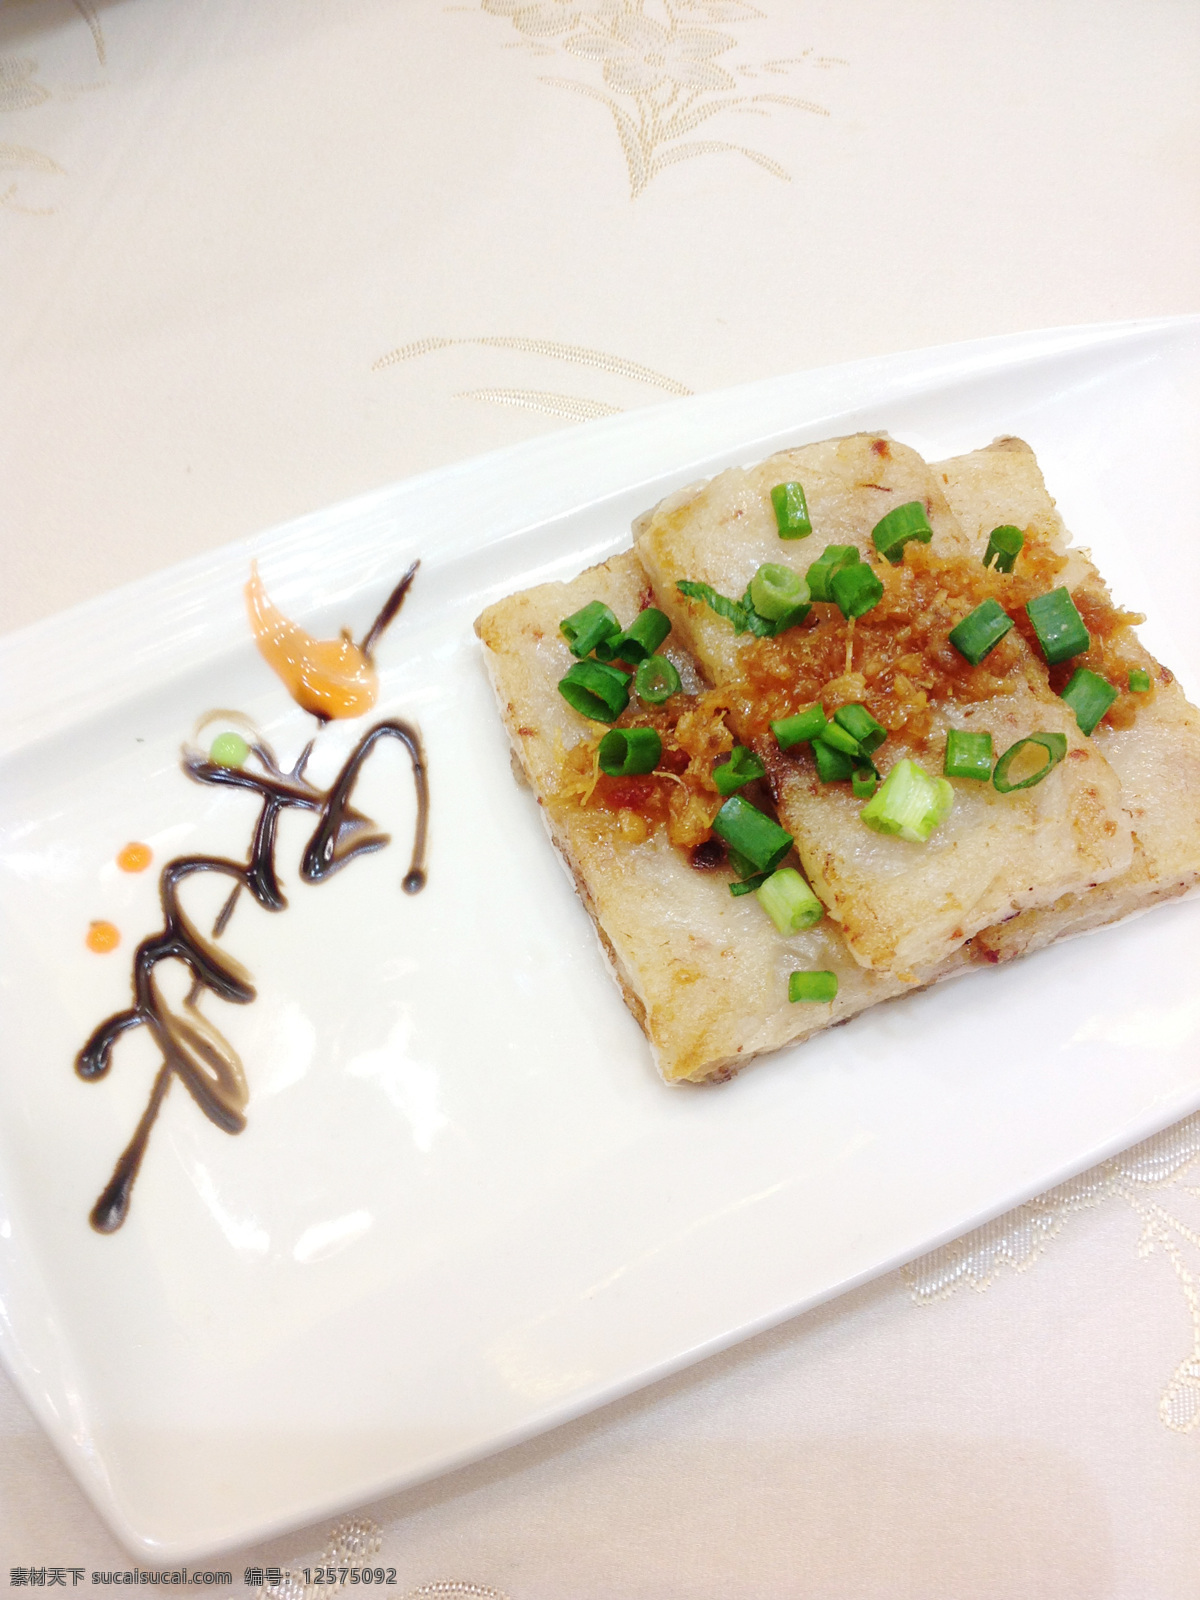 xo 香 煎 萝卜 糕 xo酱 香煎 萝卜糕 中式 小食 照片 传统美食 餐饮美食